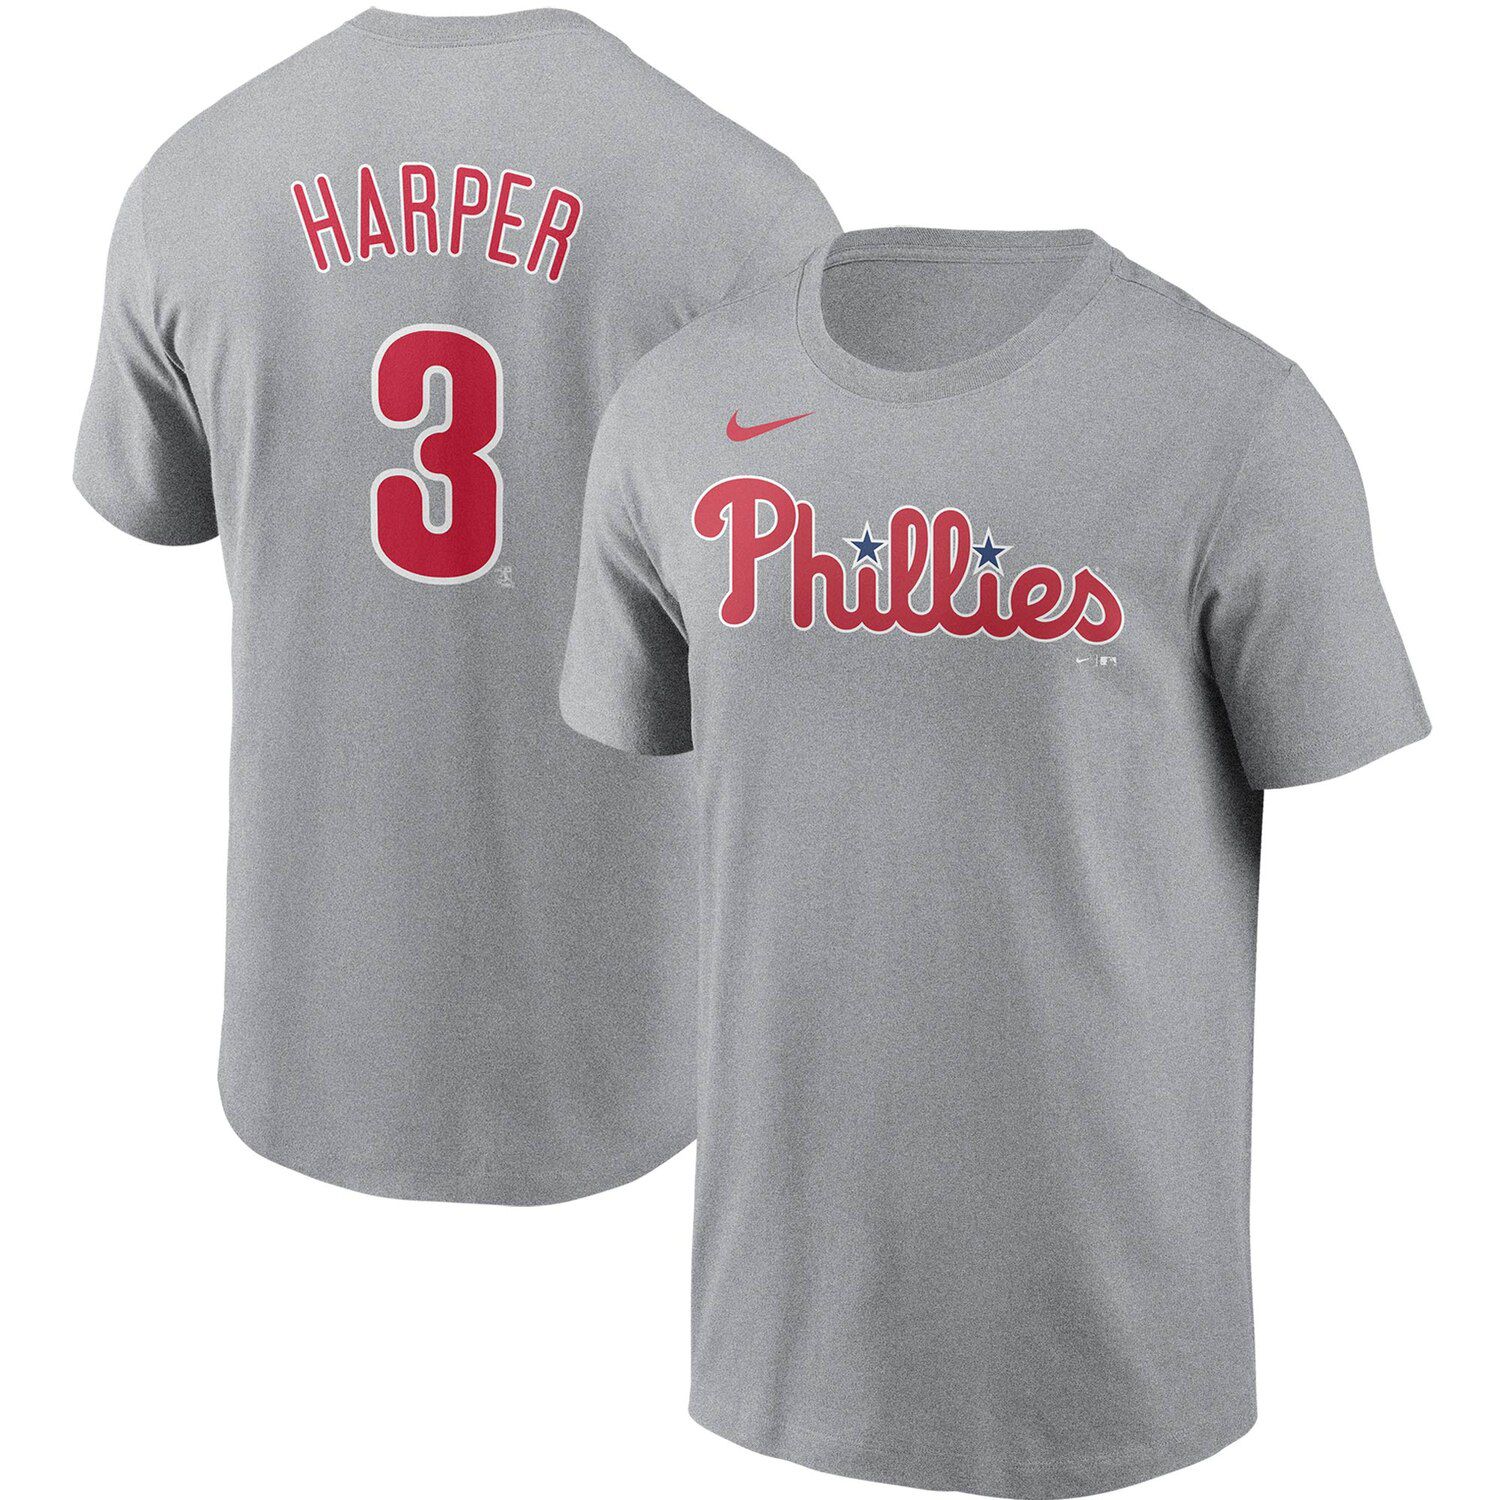 phillies harper shirt